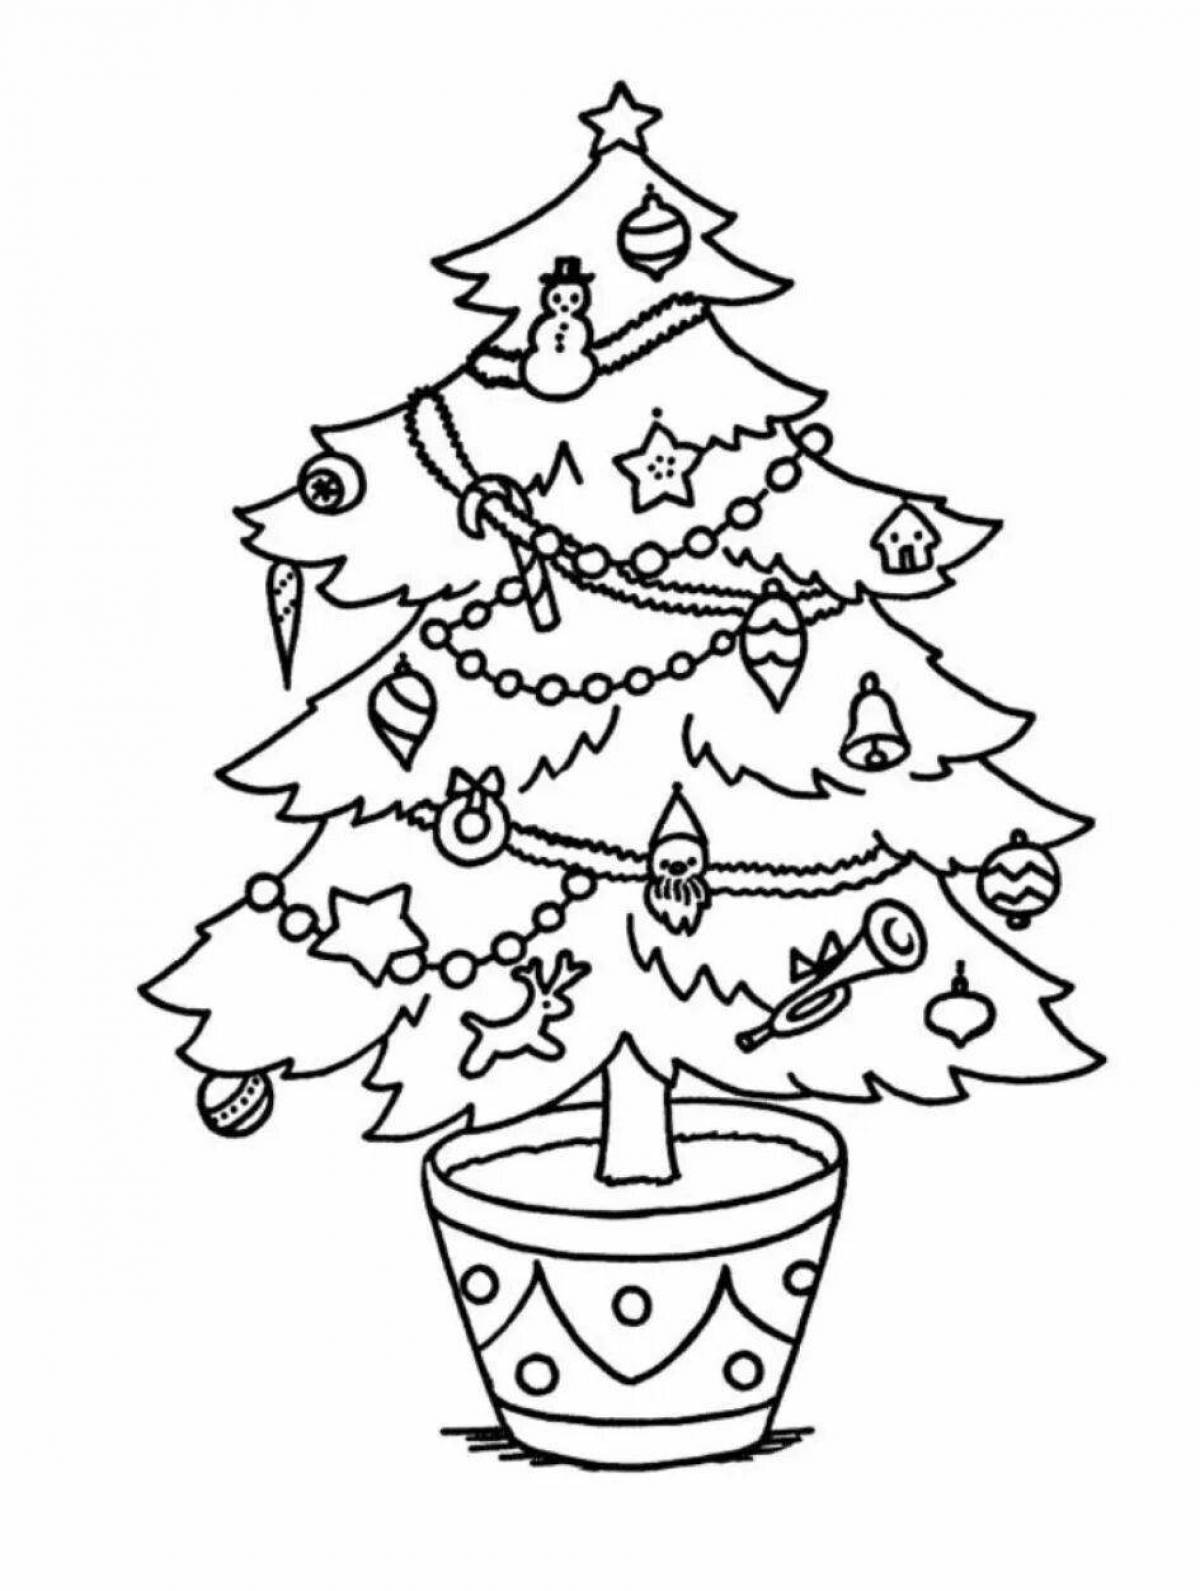 Joyful Christmas tree with gifts